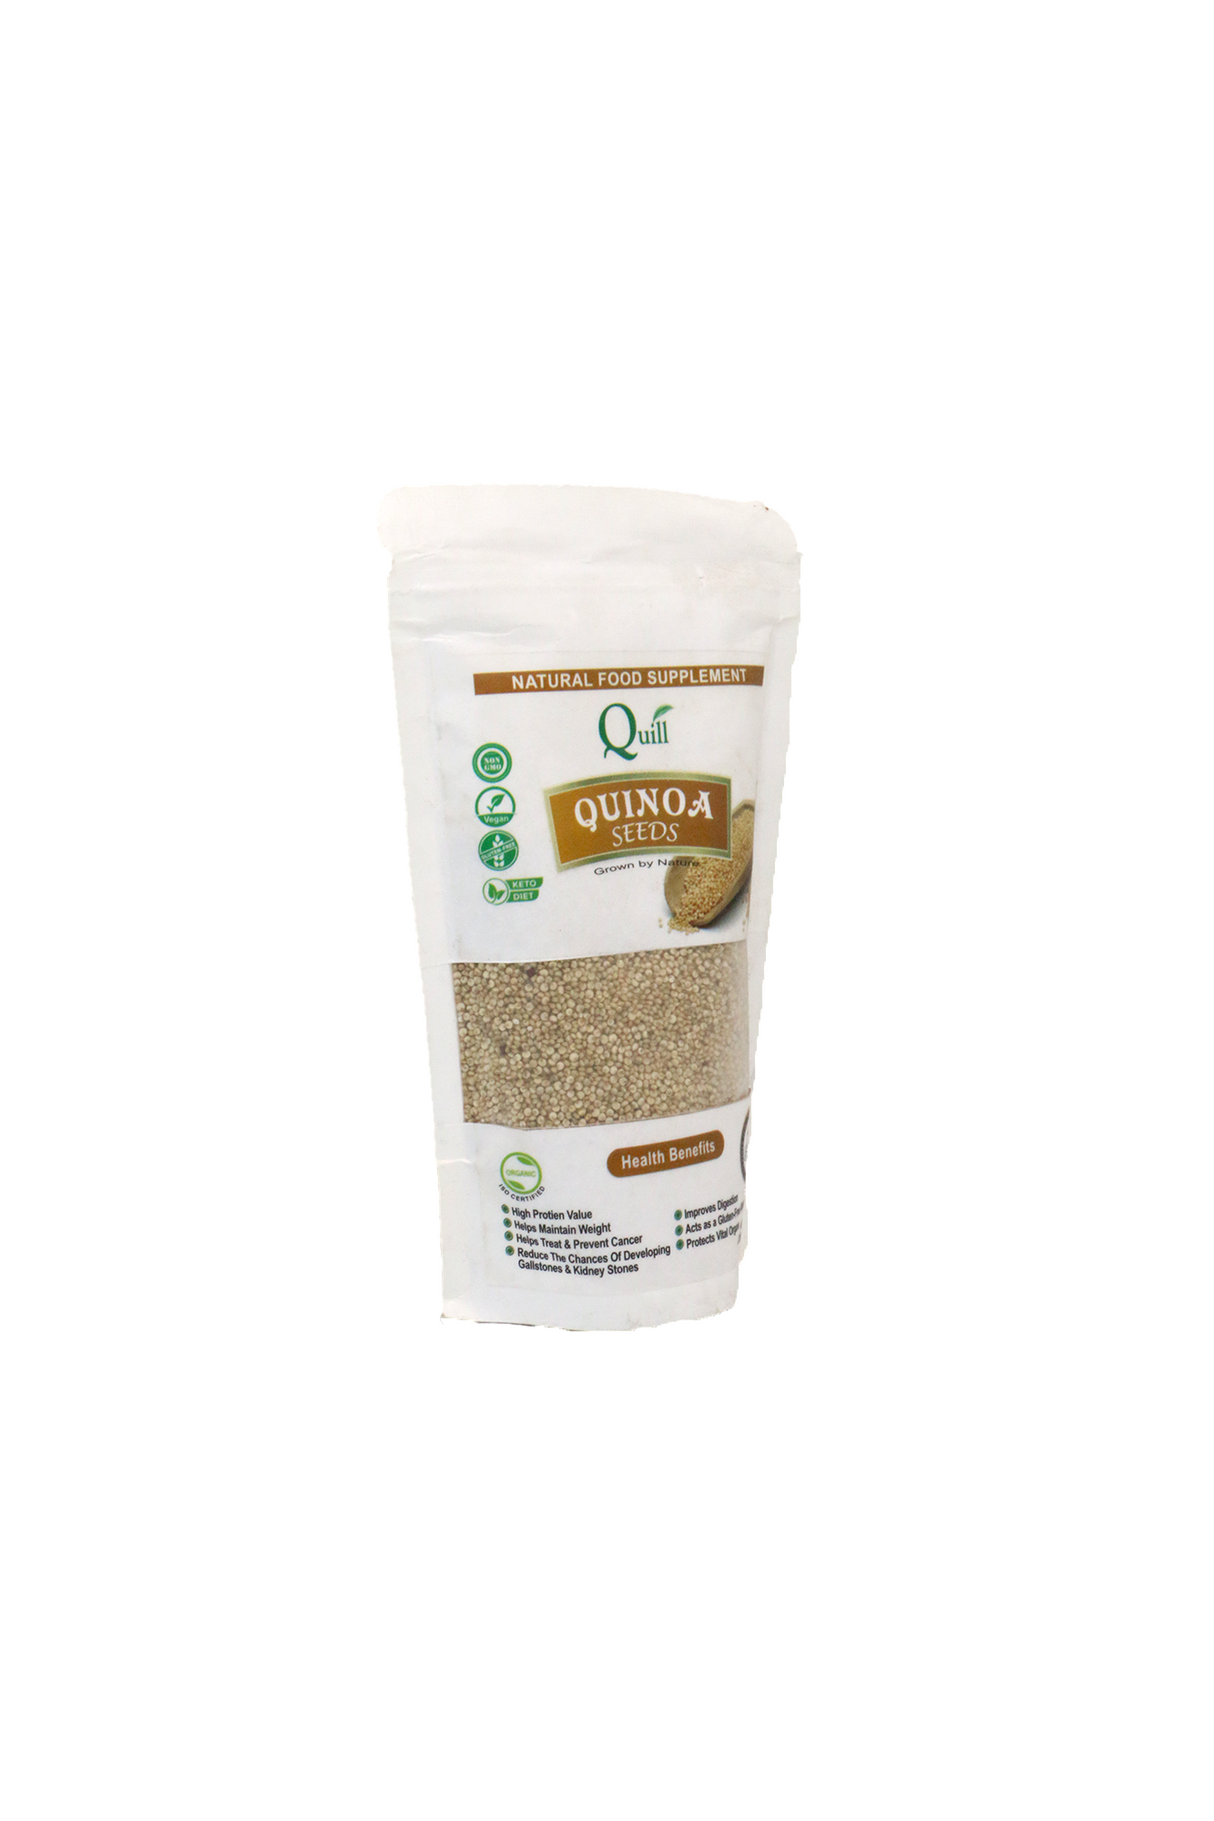 quill quinoa seeds 225g